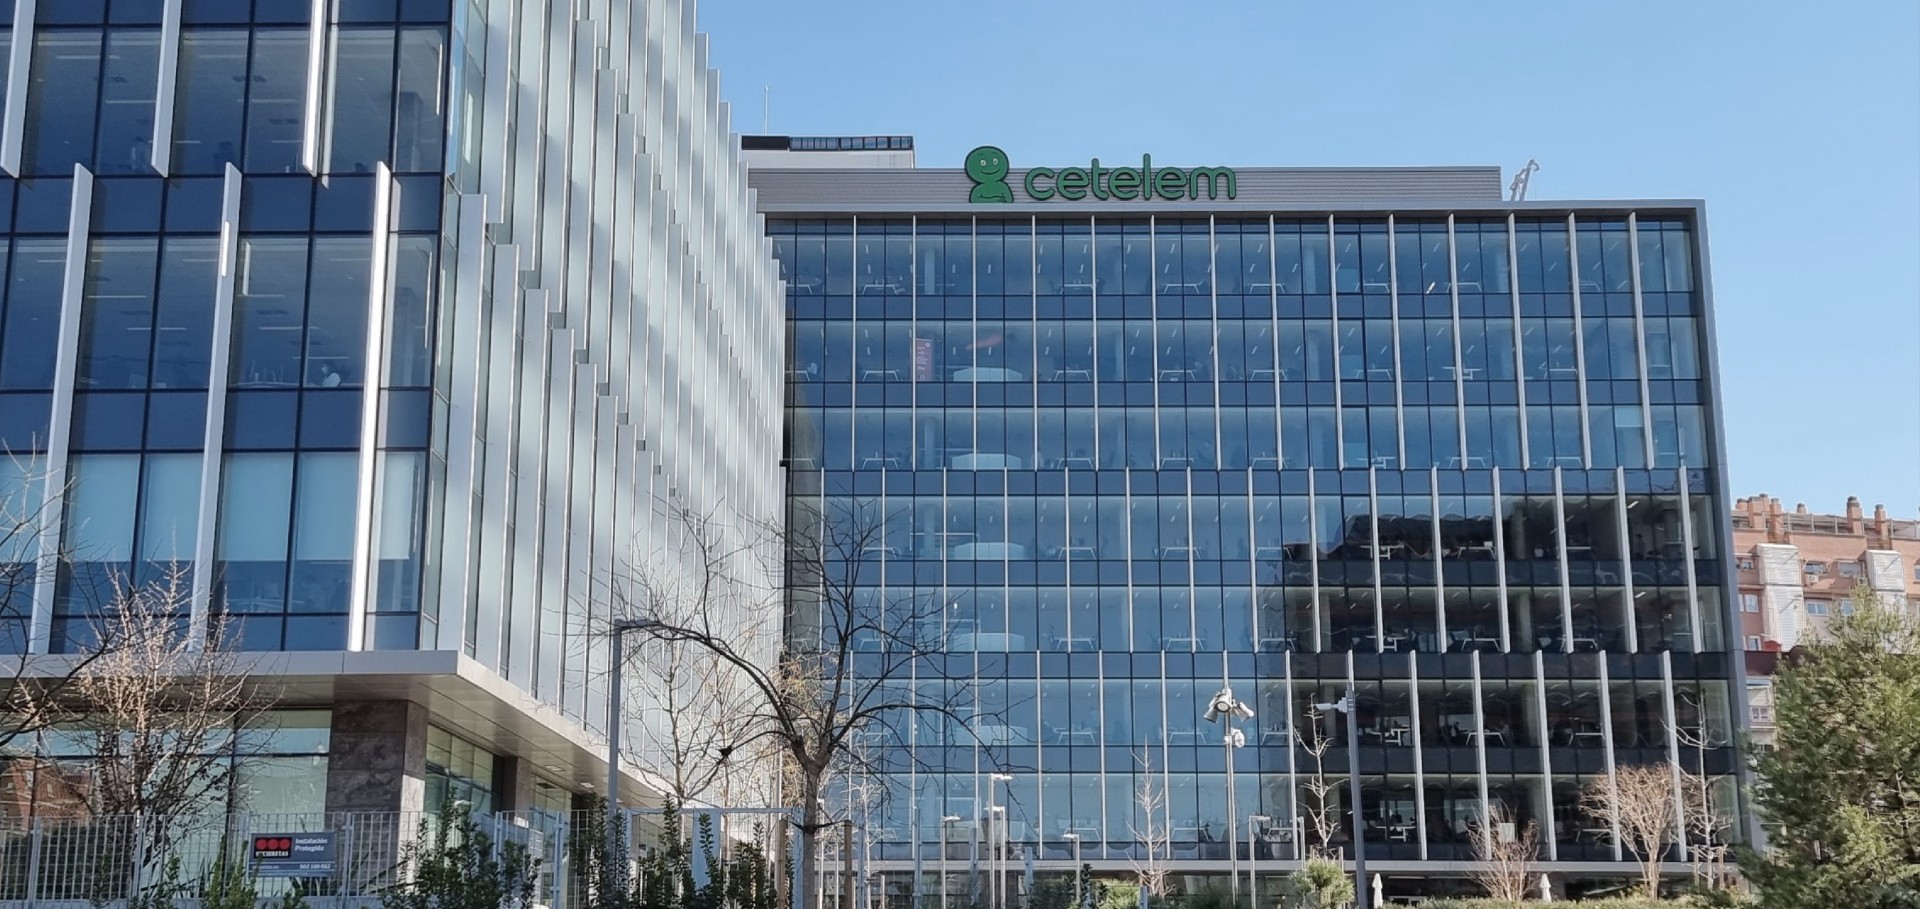 Fotografía de la fachada de las oficinas de Cetelem en Madrid Río